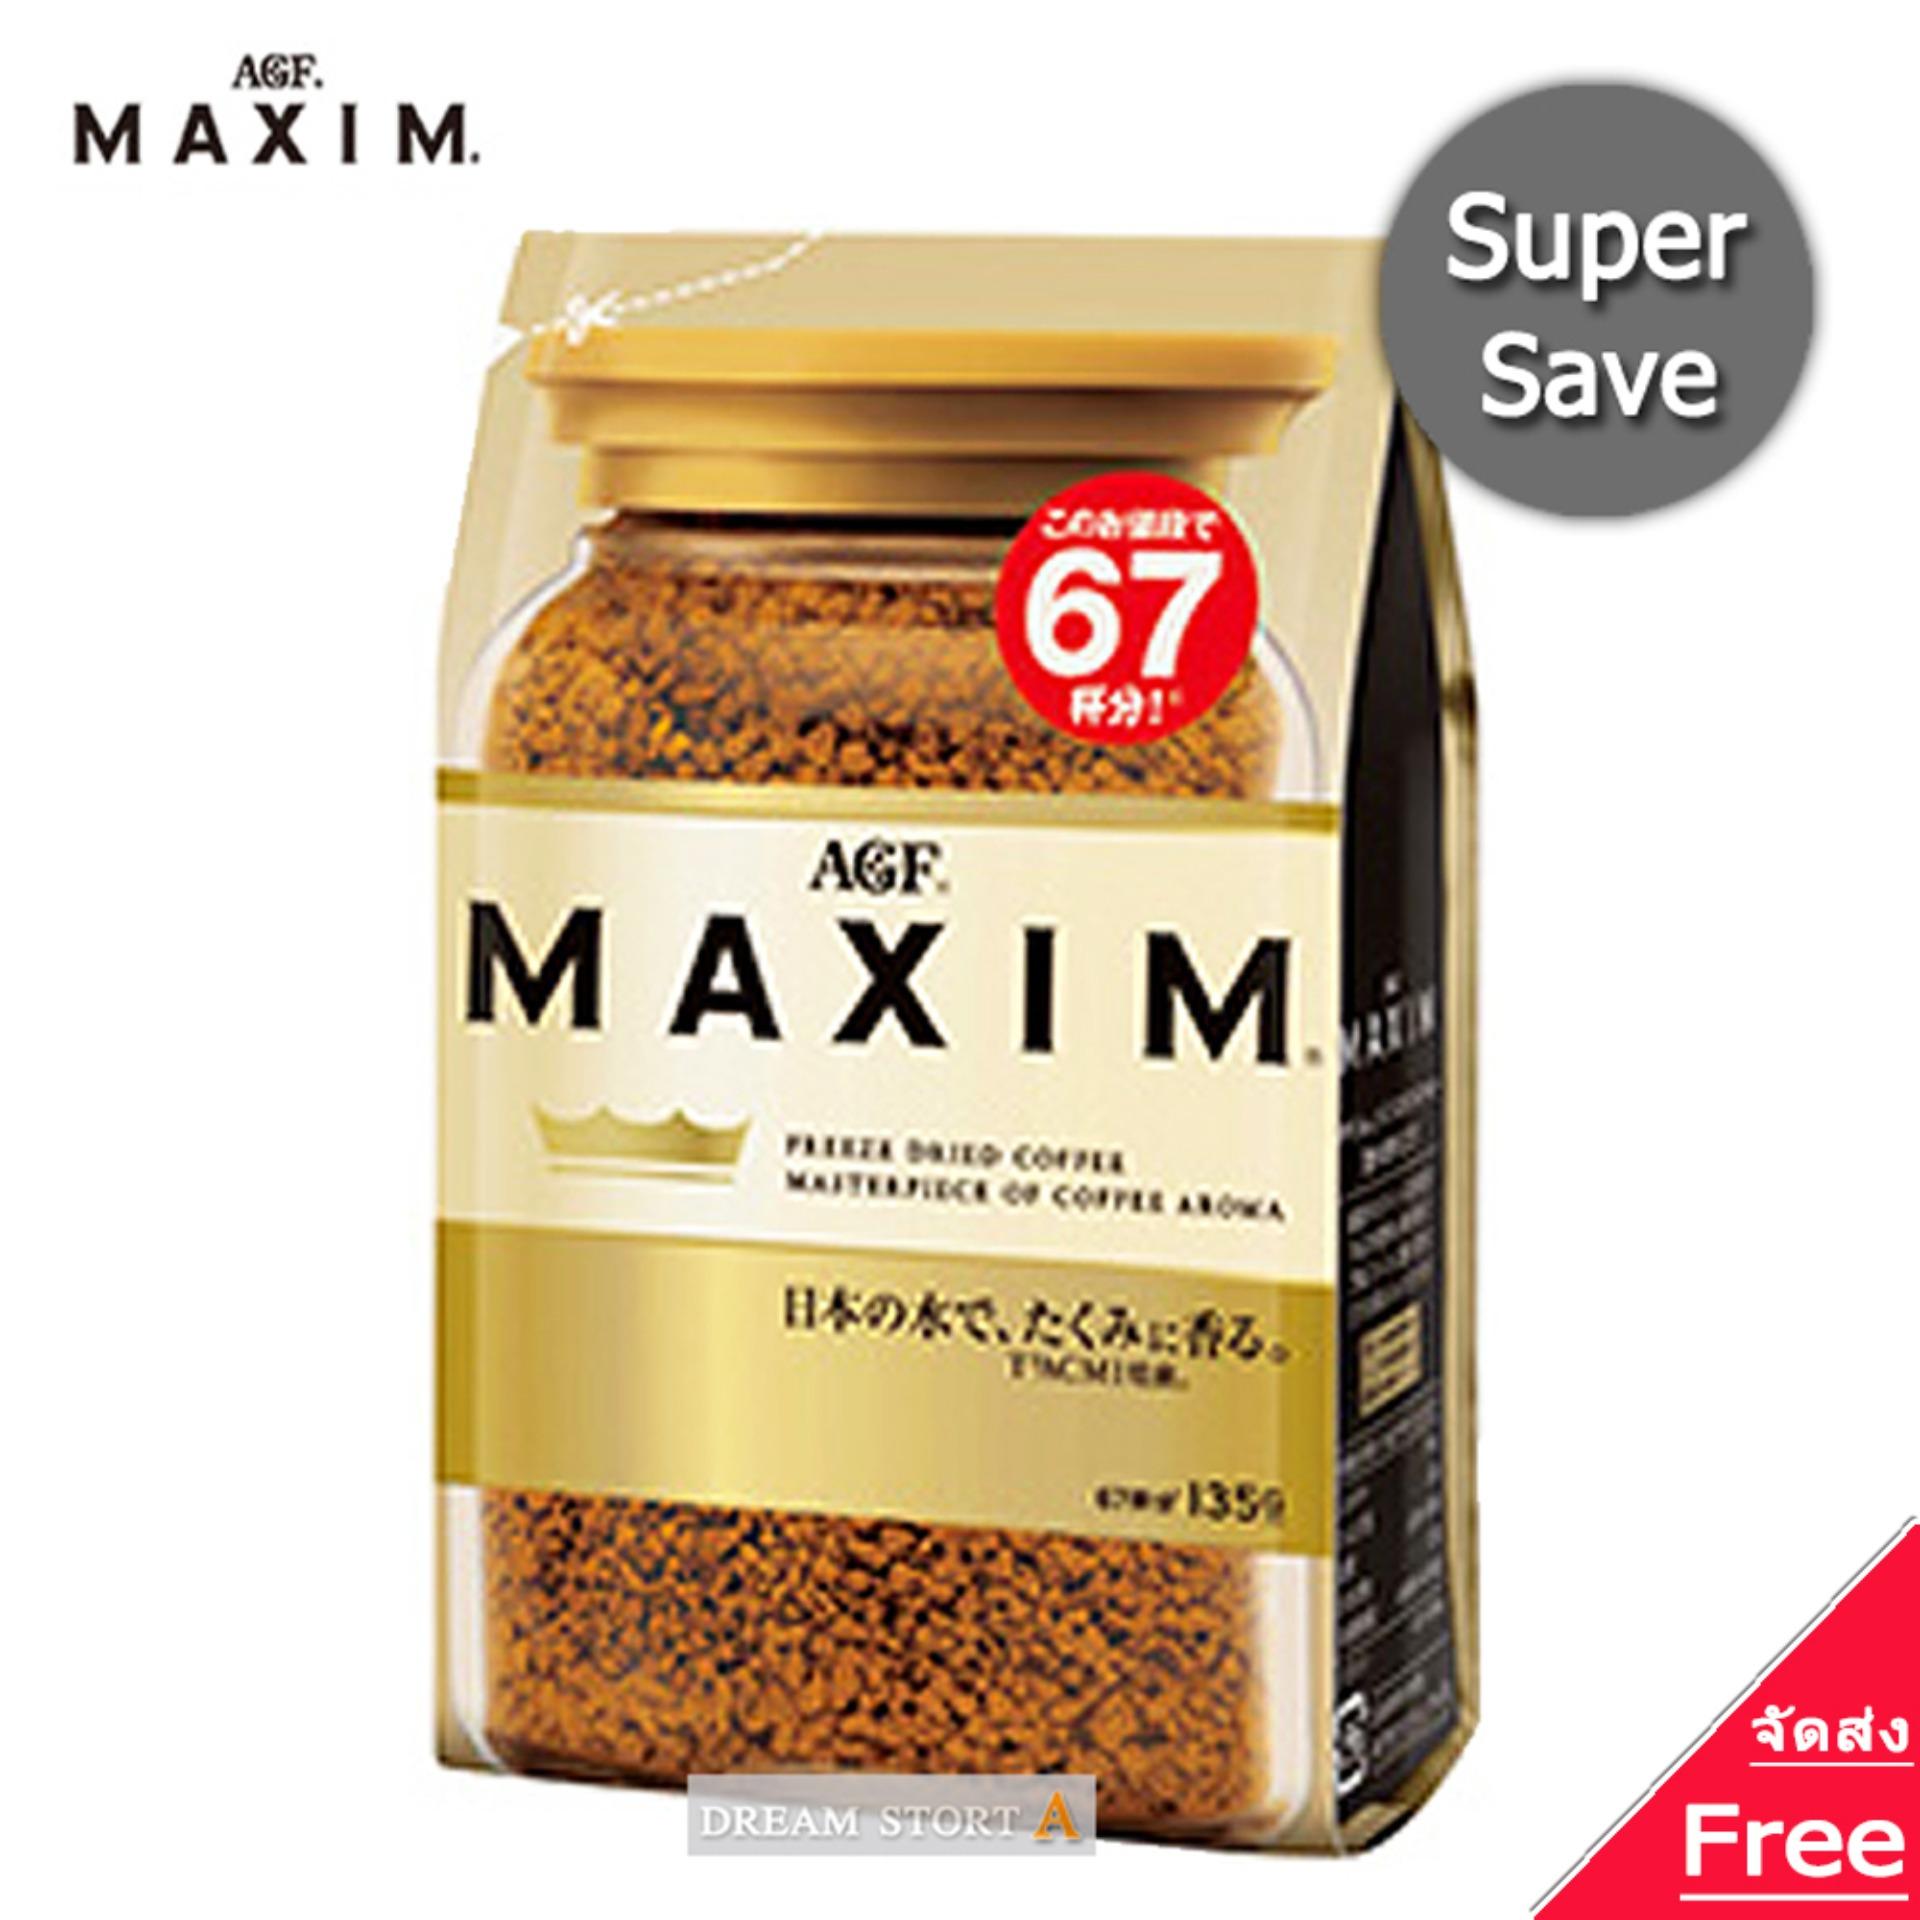 Maxim กาแฟแม็กซิม สีทอง ชนิดถุง 135 กรัม